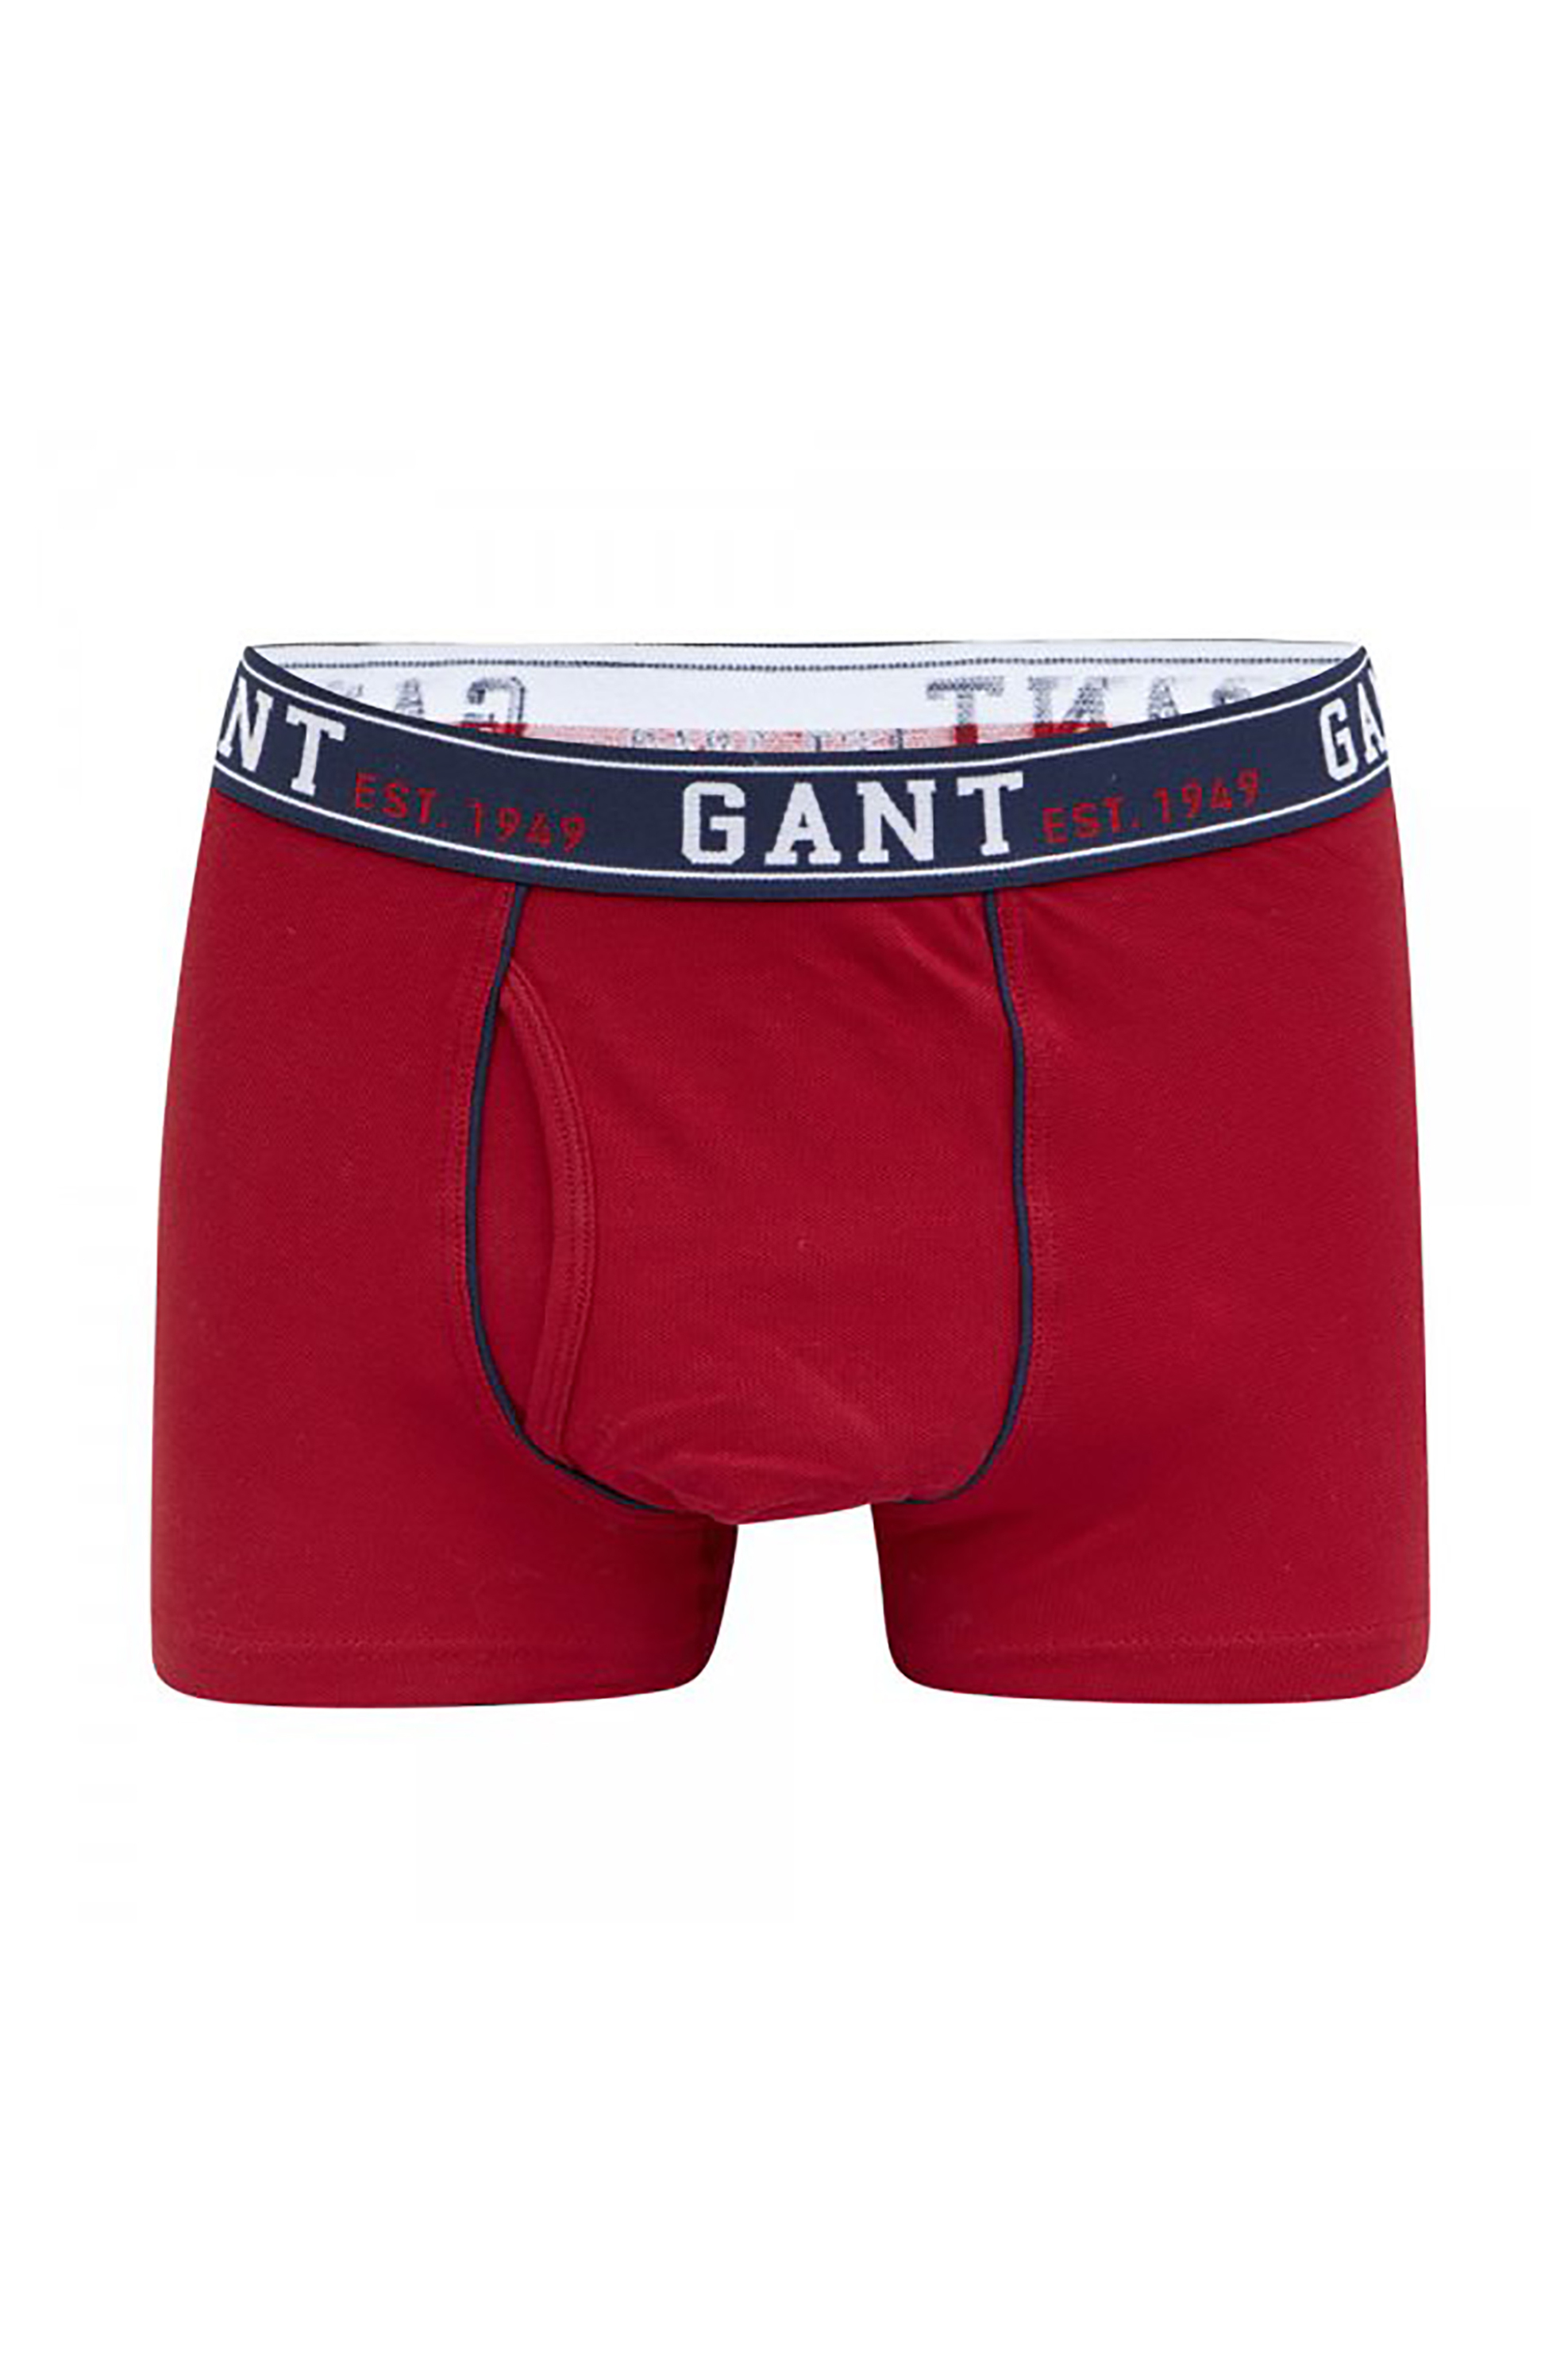 Άνδρας > ΡΟΥΧΑ > Εσώρουχα > Boxer Shorts Gant ανδρικό μποξεράκι - 1333 Κόκκινο